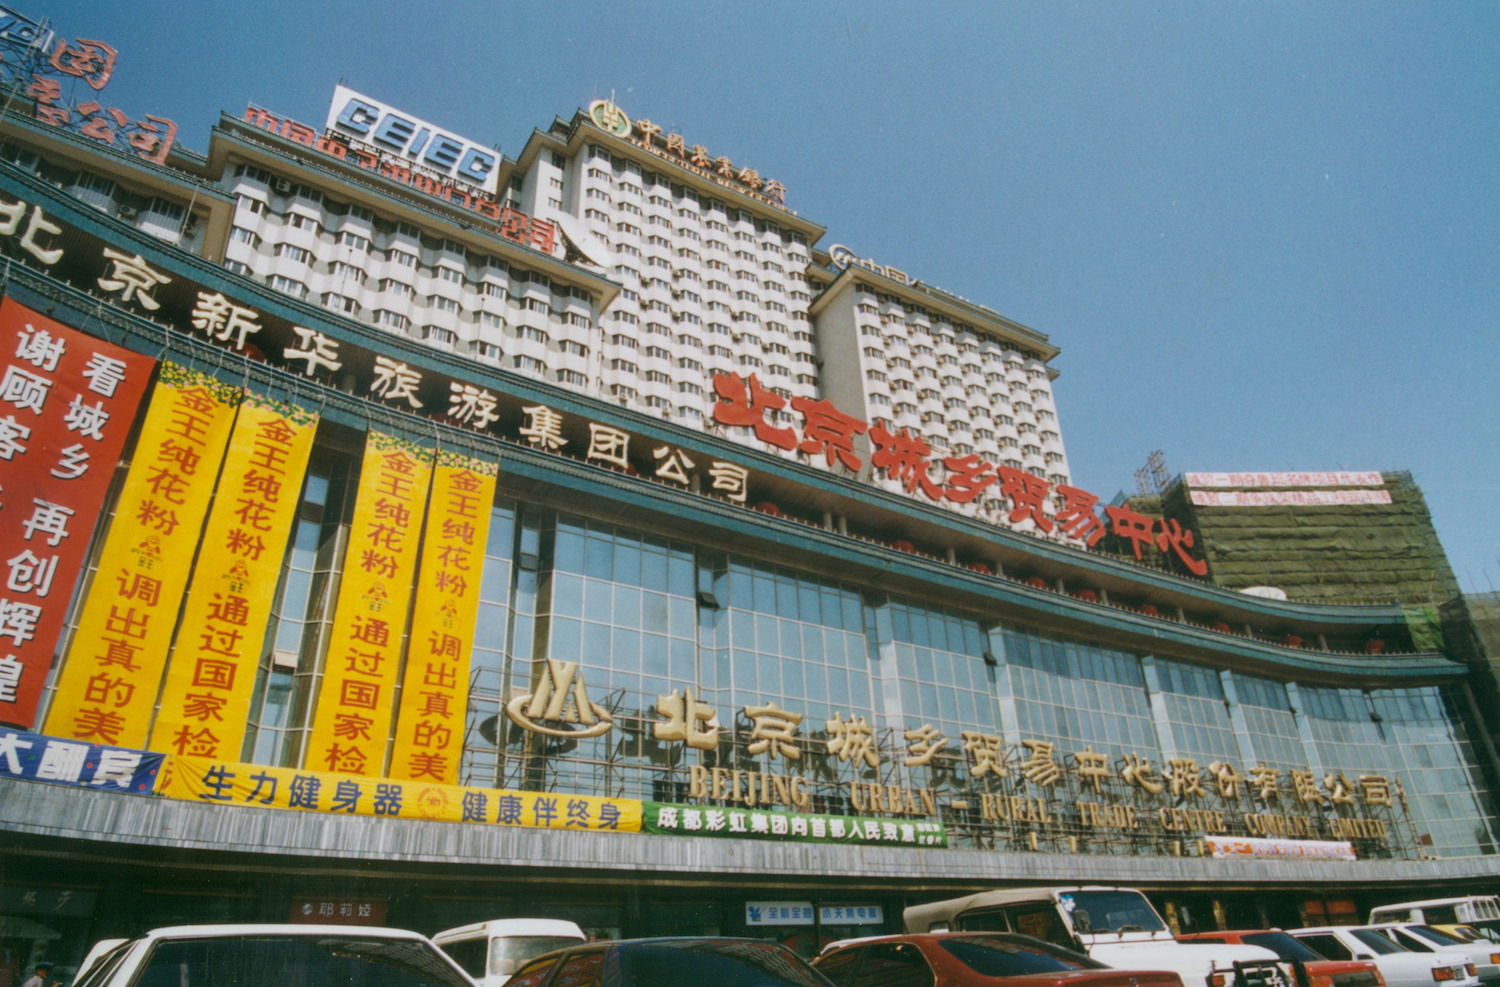 1990年代至2000年代初期的公主坟北京城乡贸易中心 图片来源:视觉中国